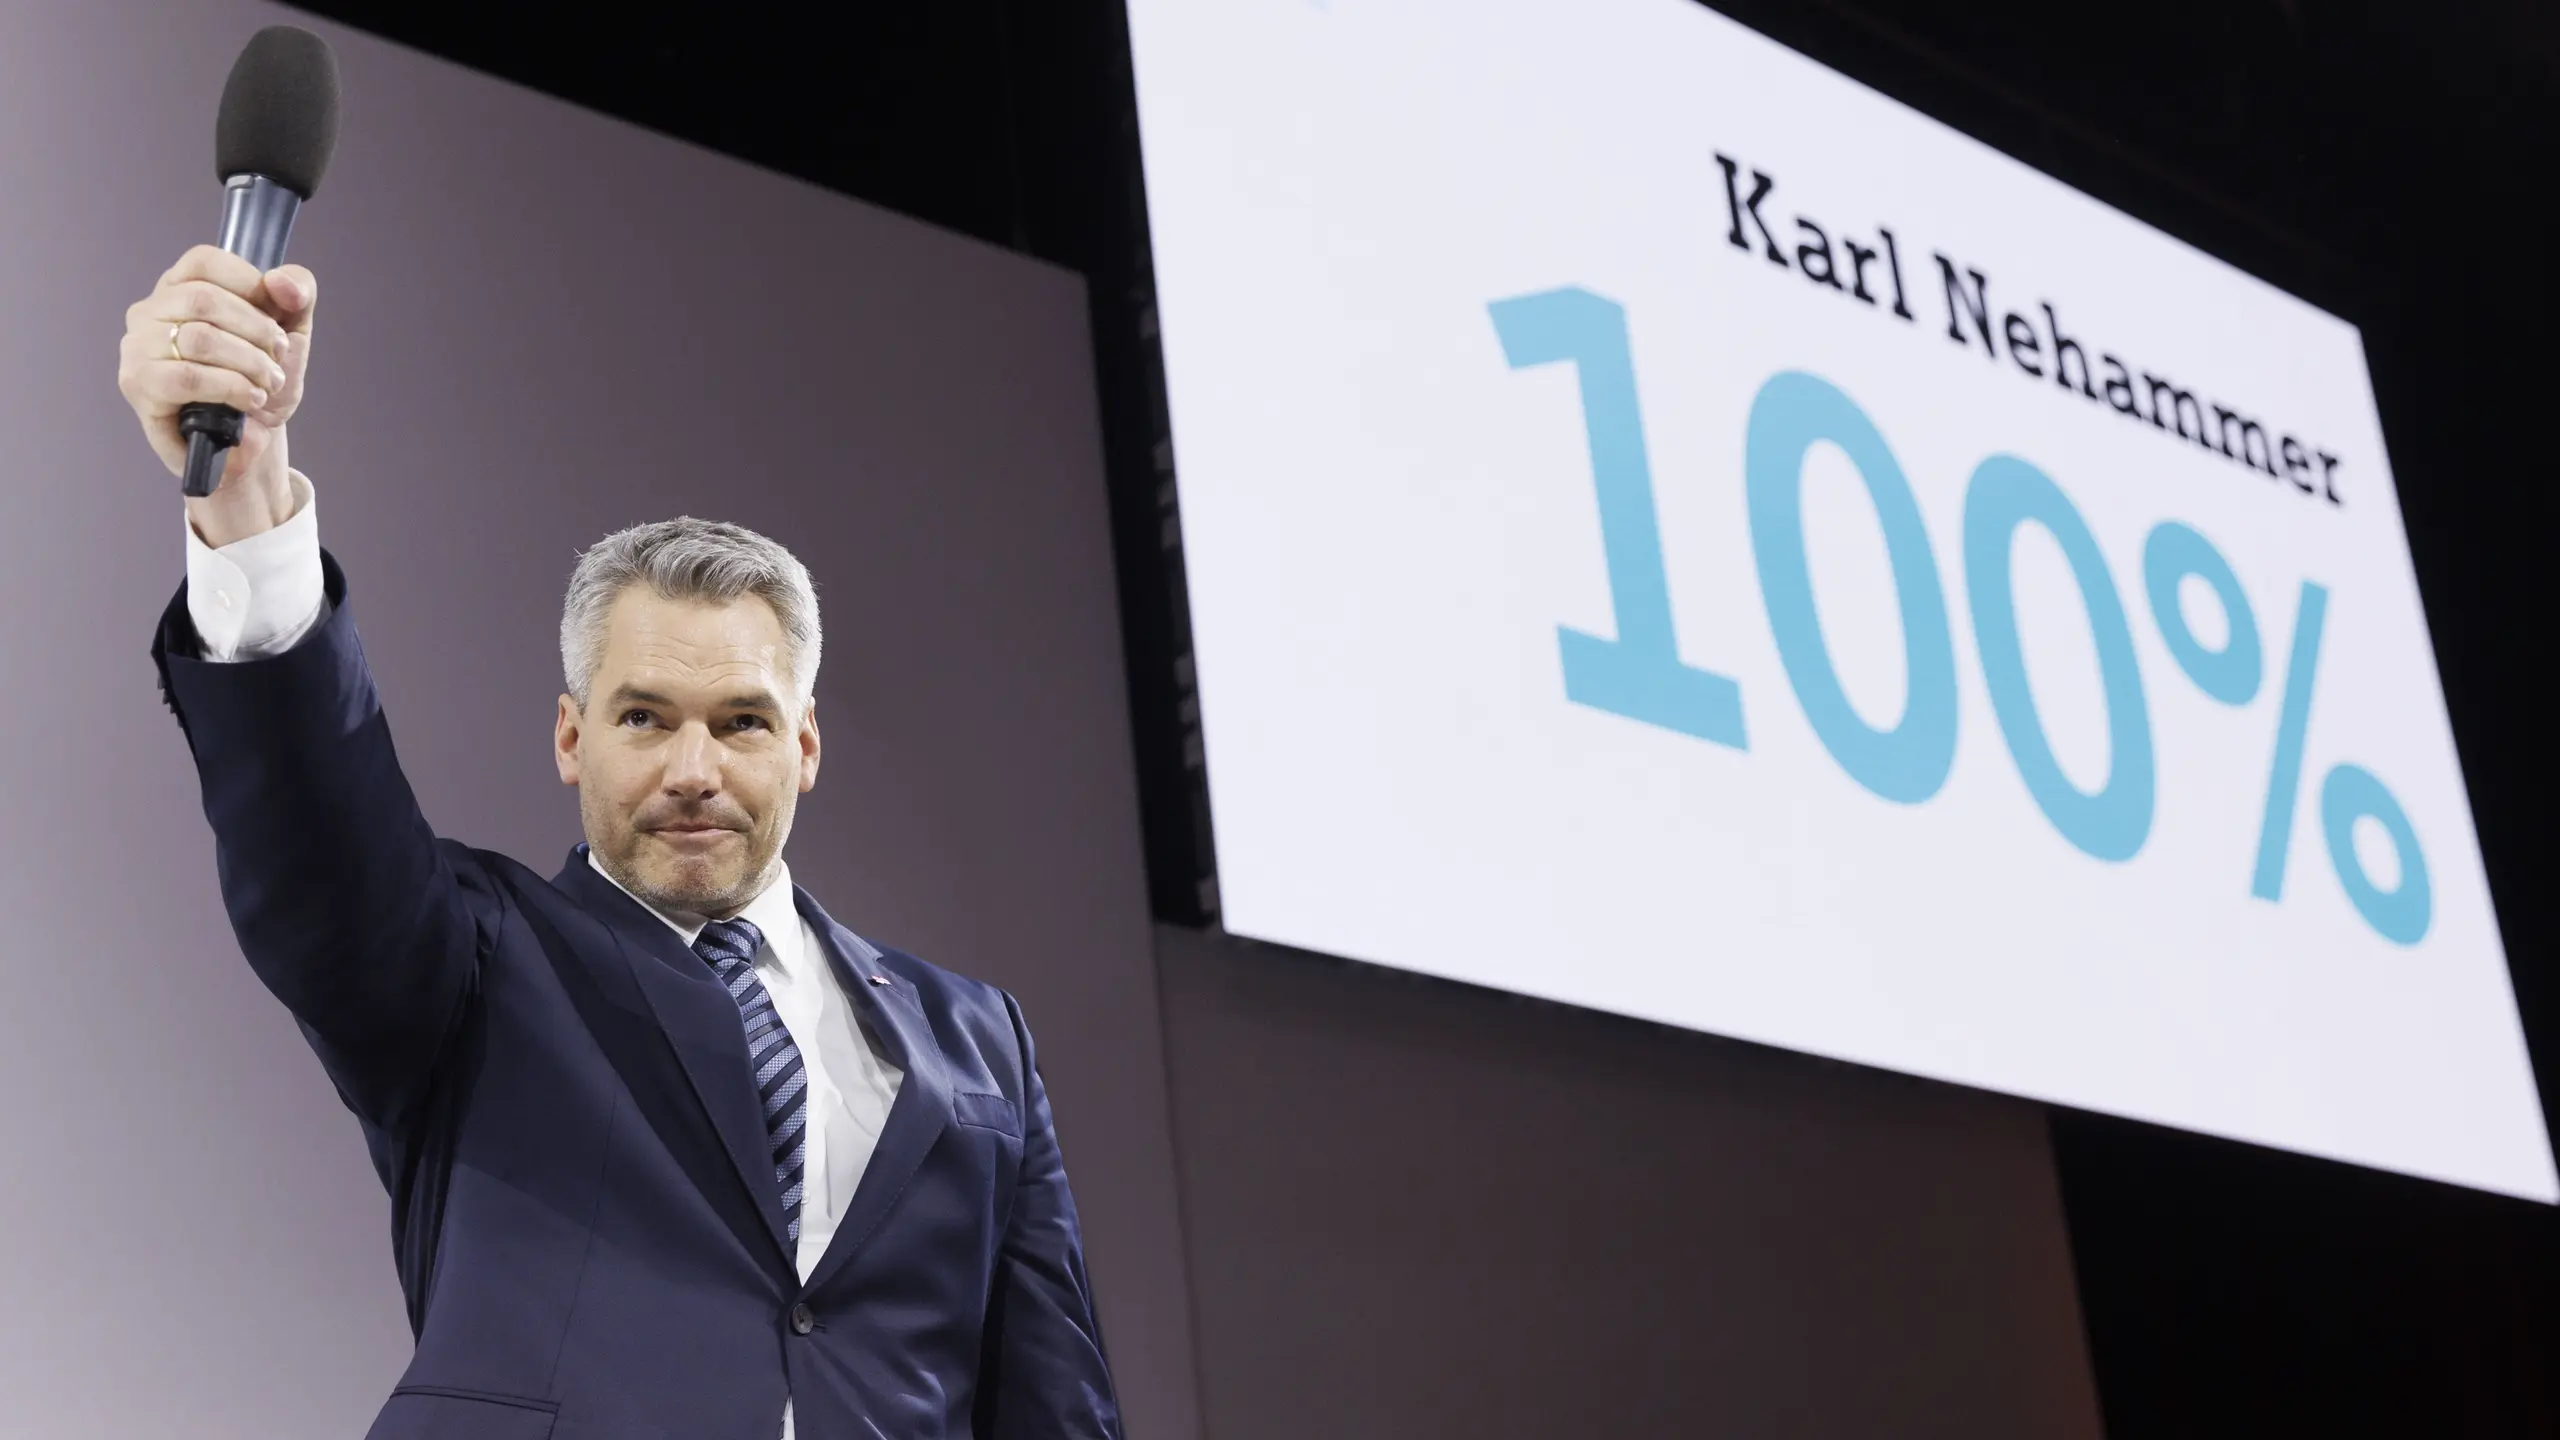 Mr. 100%: Karl Nehammer nach seiner Wahl zum ÖVP-Parteiobmann am 14. Mai 2022.